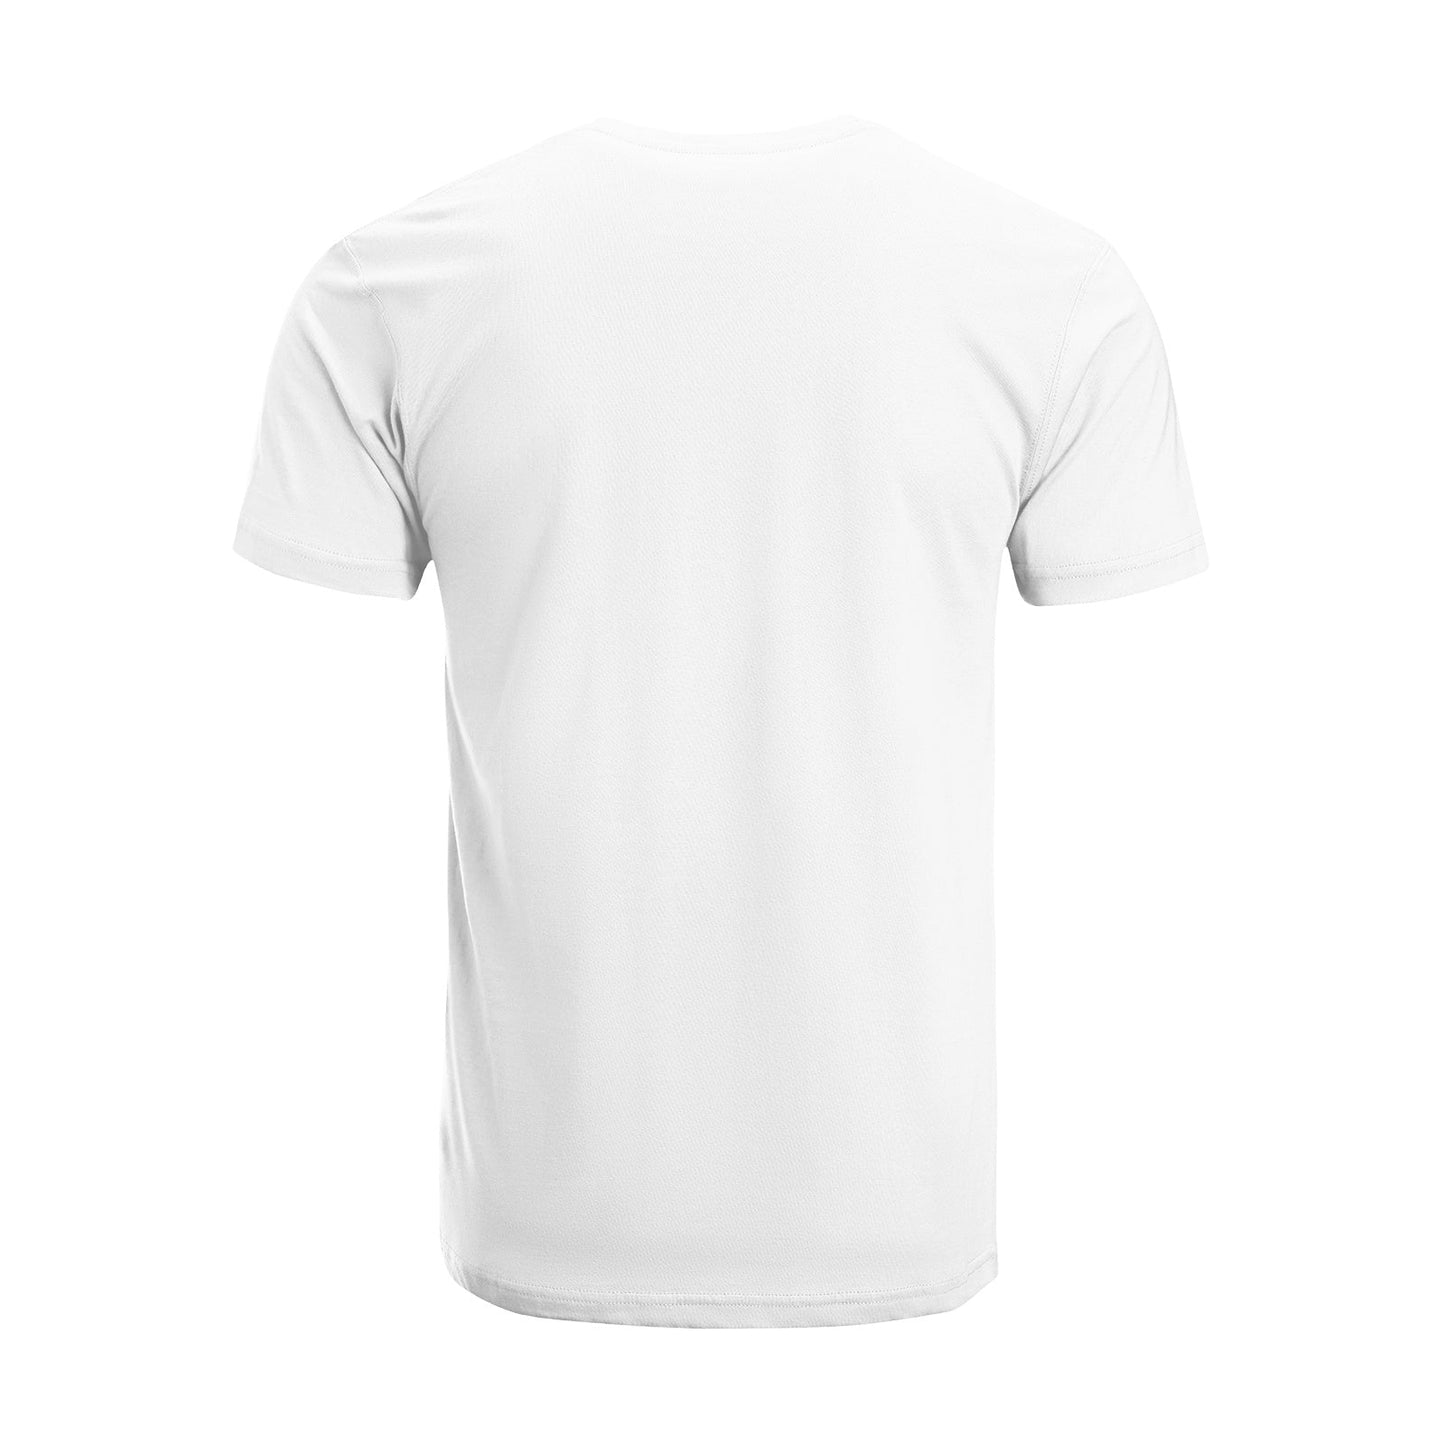 Unisex Short Sleeve Crew Neck Cotton Jersey T-Shirt TRUCK 40